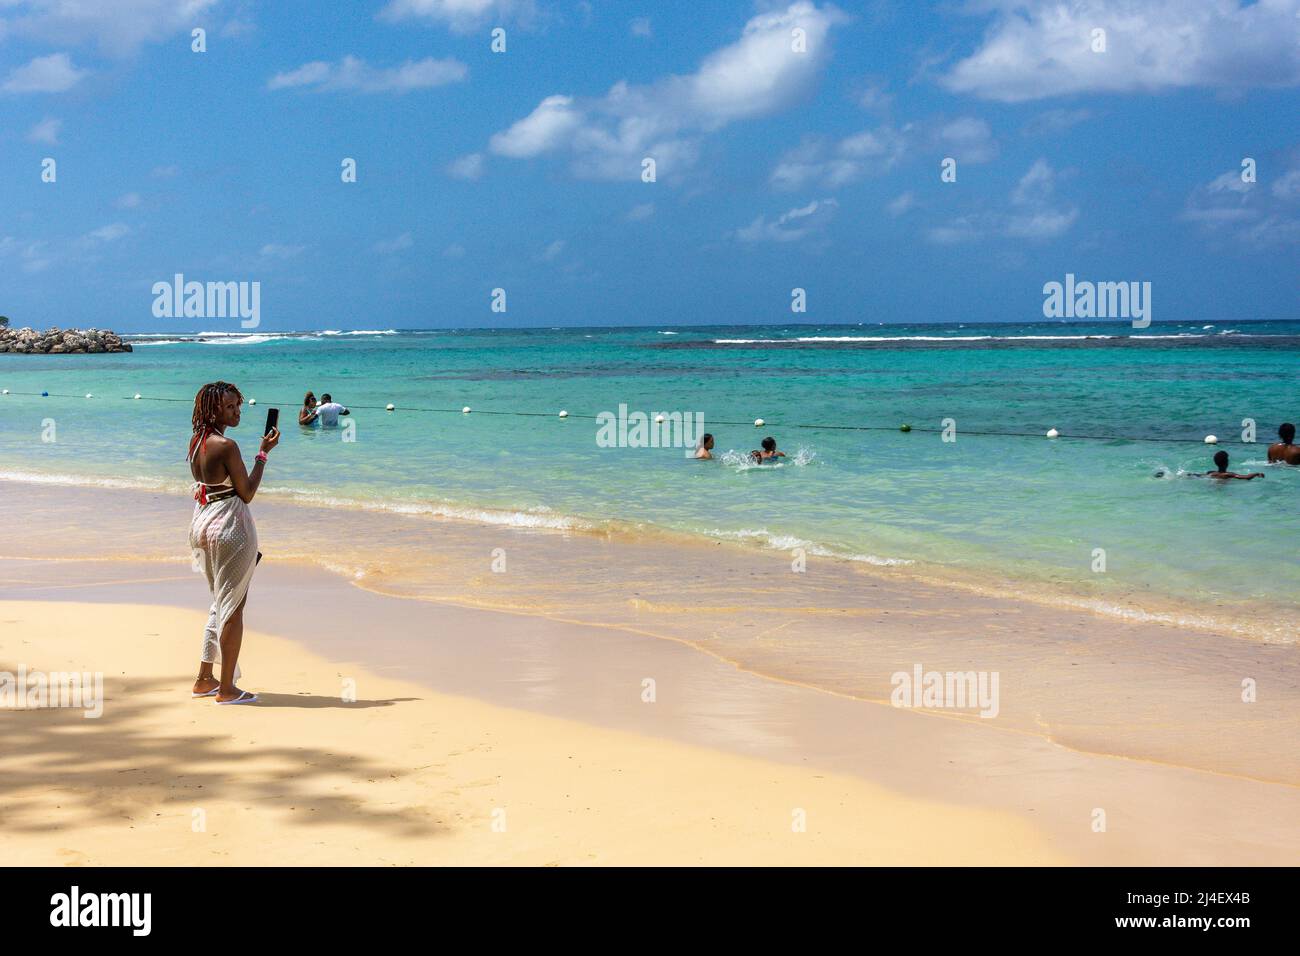 Beach view at Dunns River Falls, Ocho Rios, St Ann Parish, Jamaica, Greater Antilles, Caribbean Stock Photo